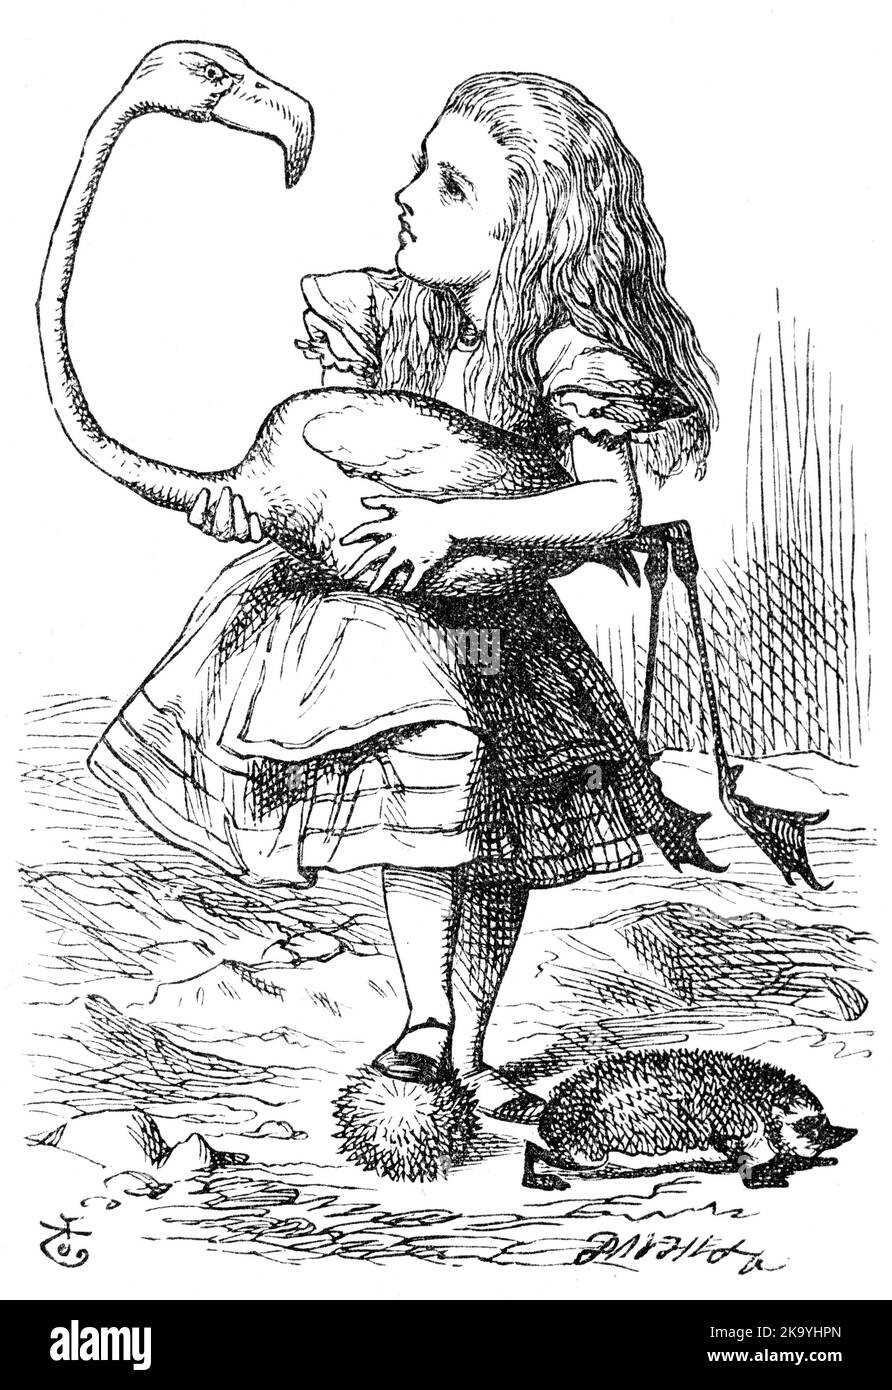 Illustrazione da Alice nel paese delle meraviglie. 'La difficoltà principale che Alice trovò inizialmente era quella di gestire il suo fenicottero'. Illustrazione di John Tenniel, 1865. Foto Stock